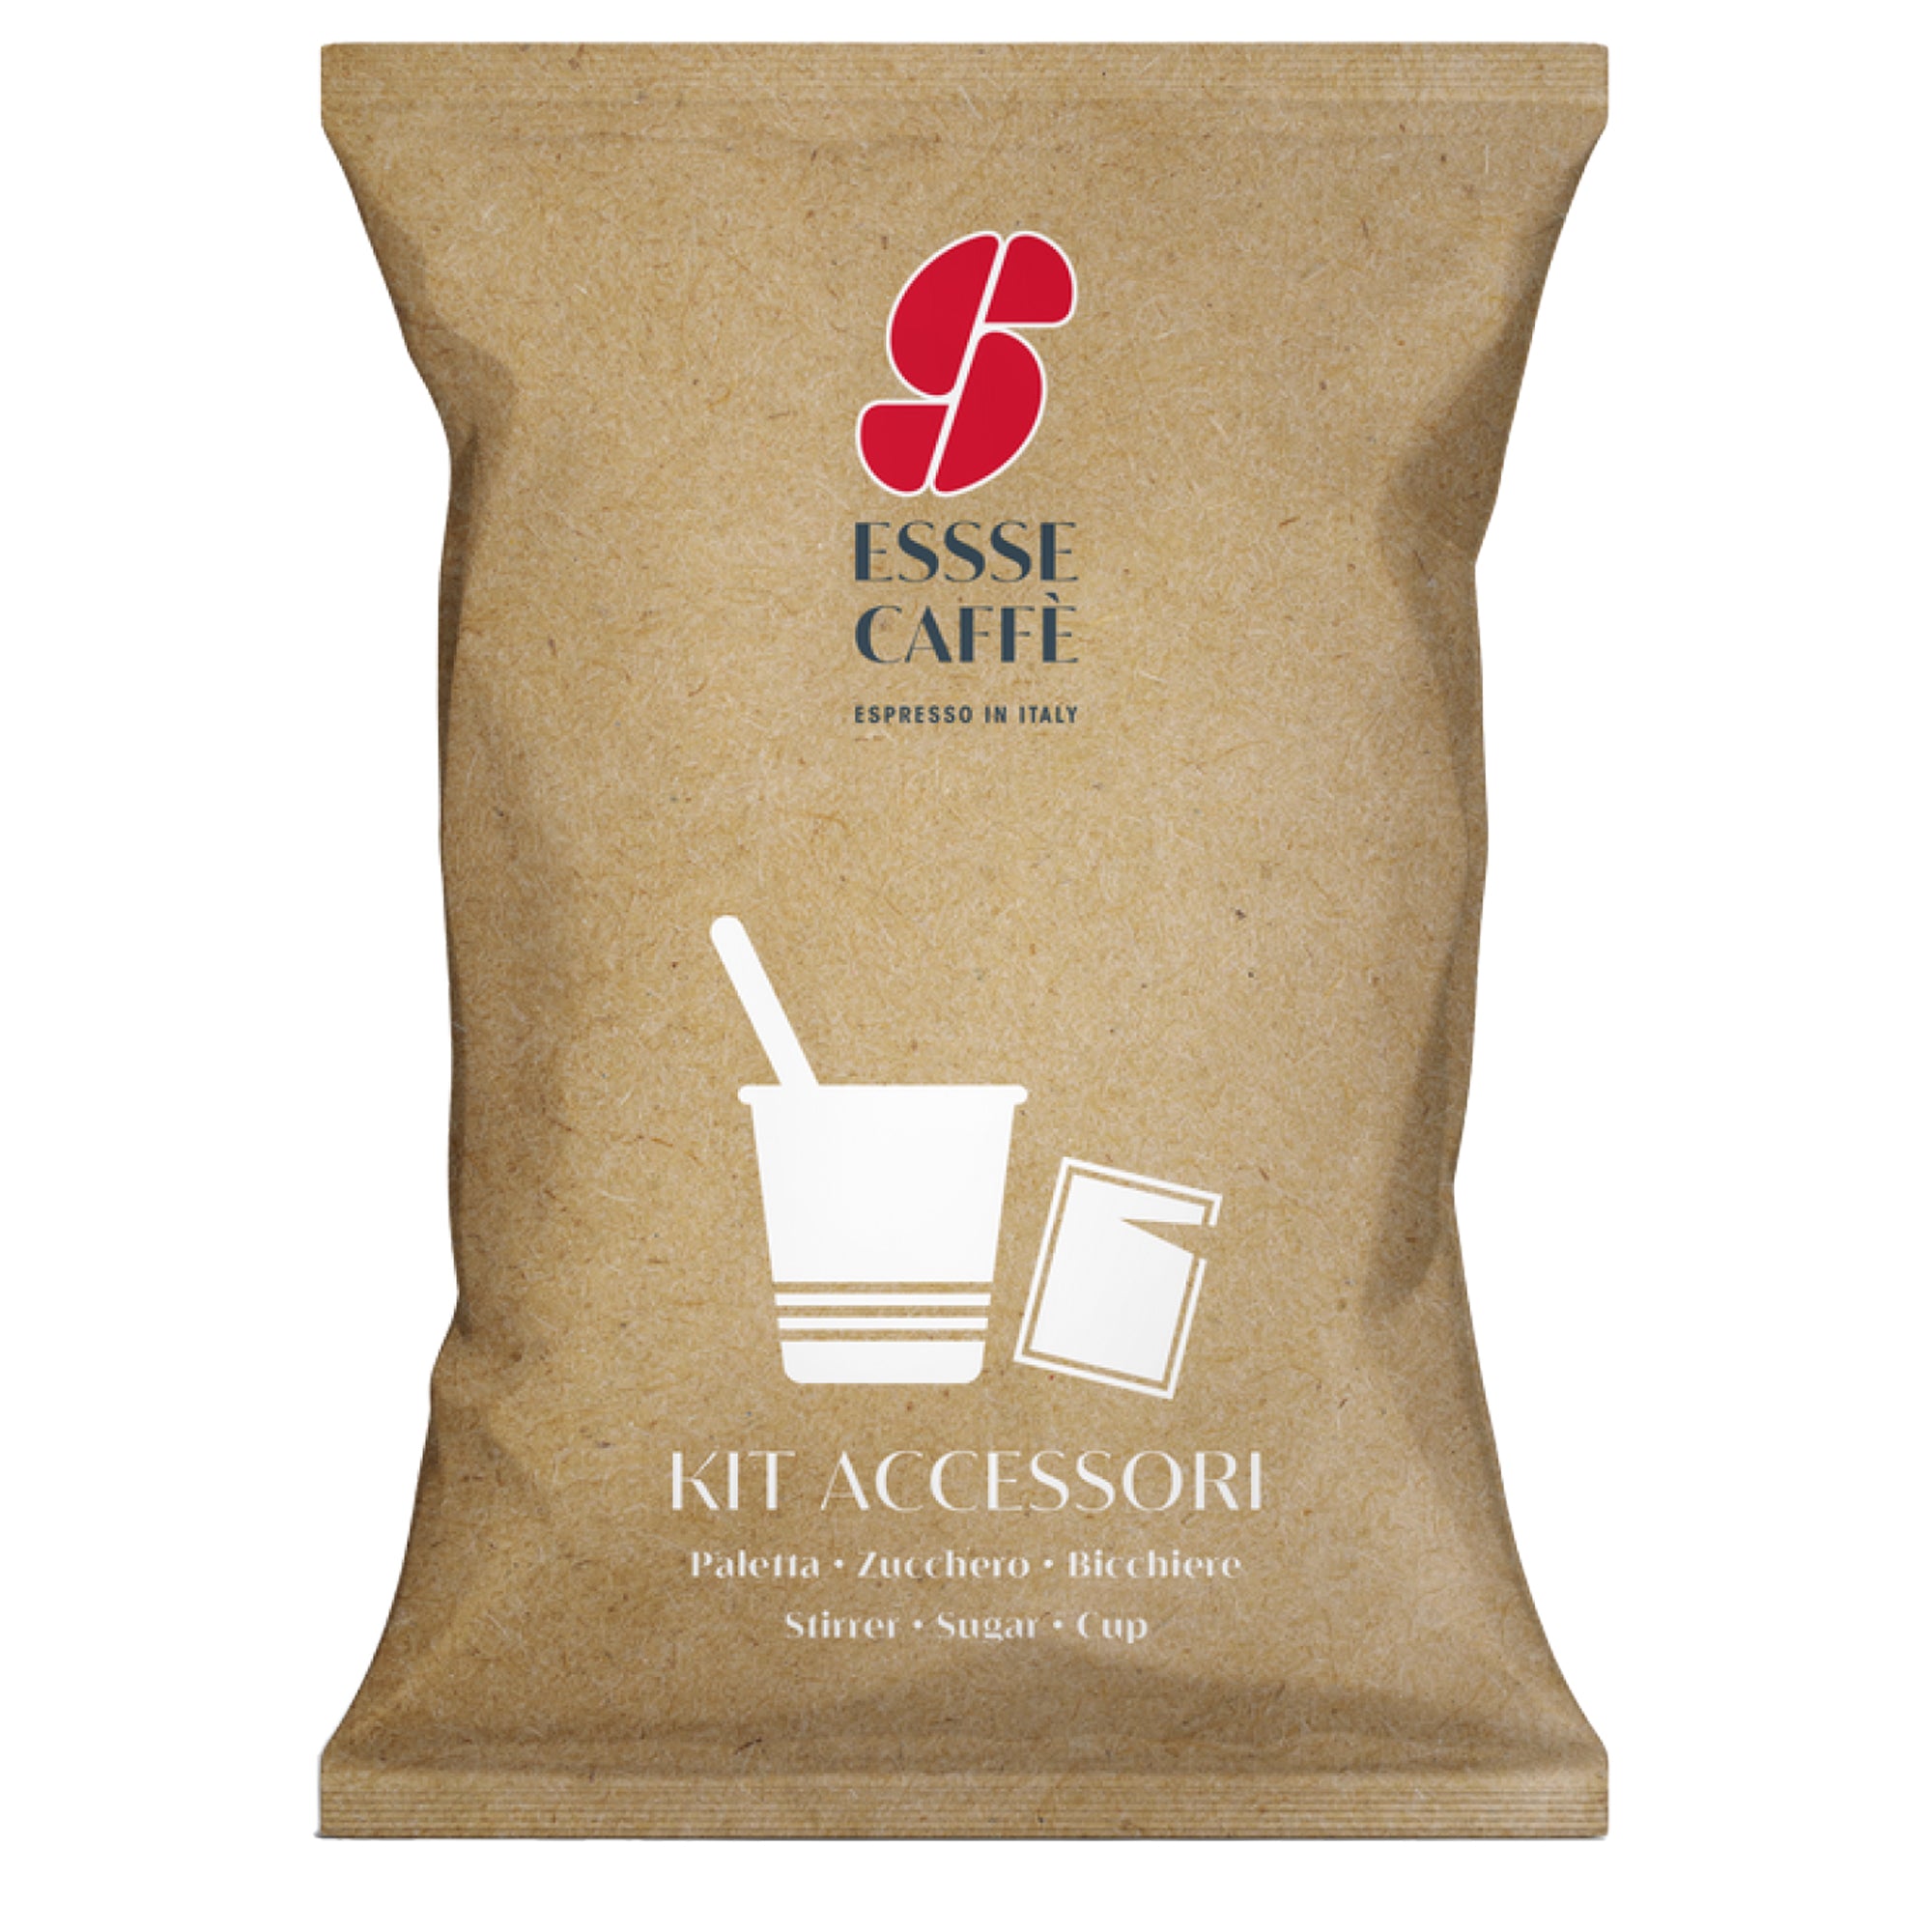 essse-caffe-serving-kit-50-bicchierini-50-bustine-zucchero-50-palettine-esssecaffe